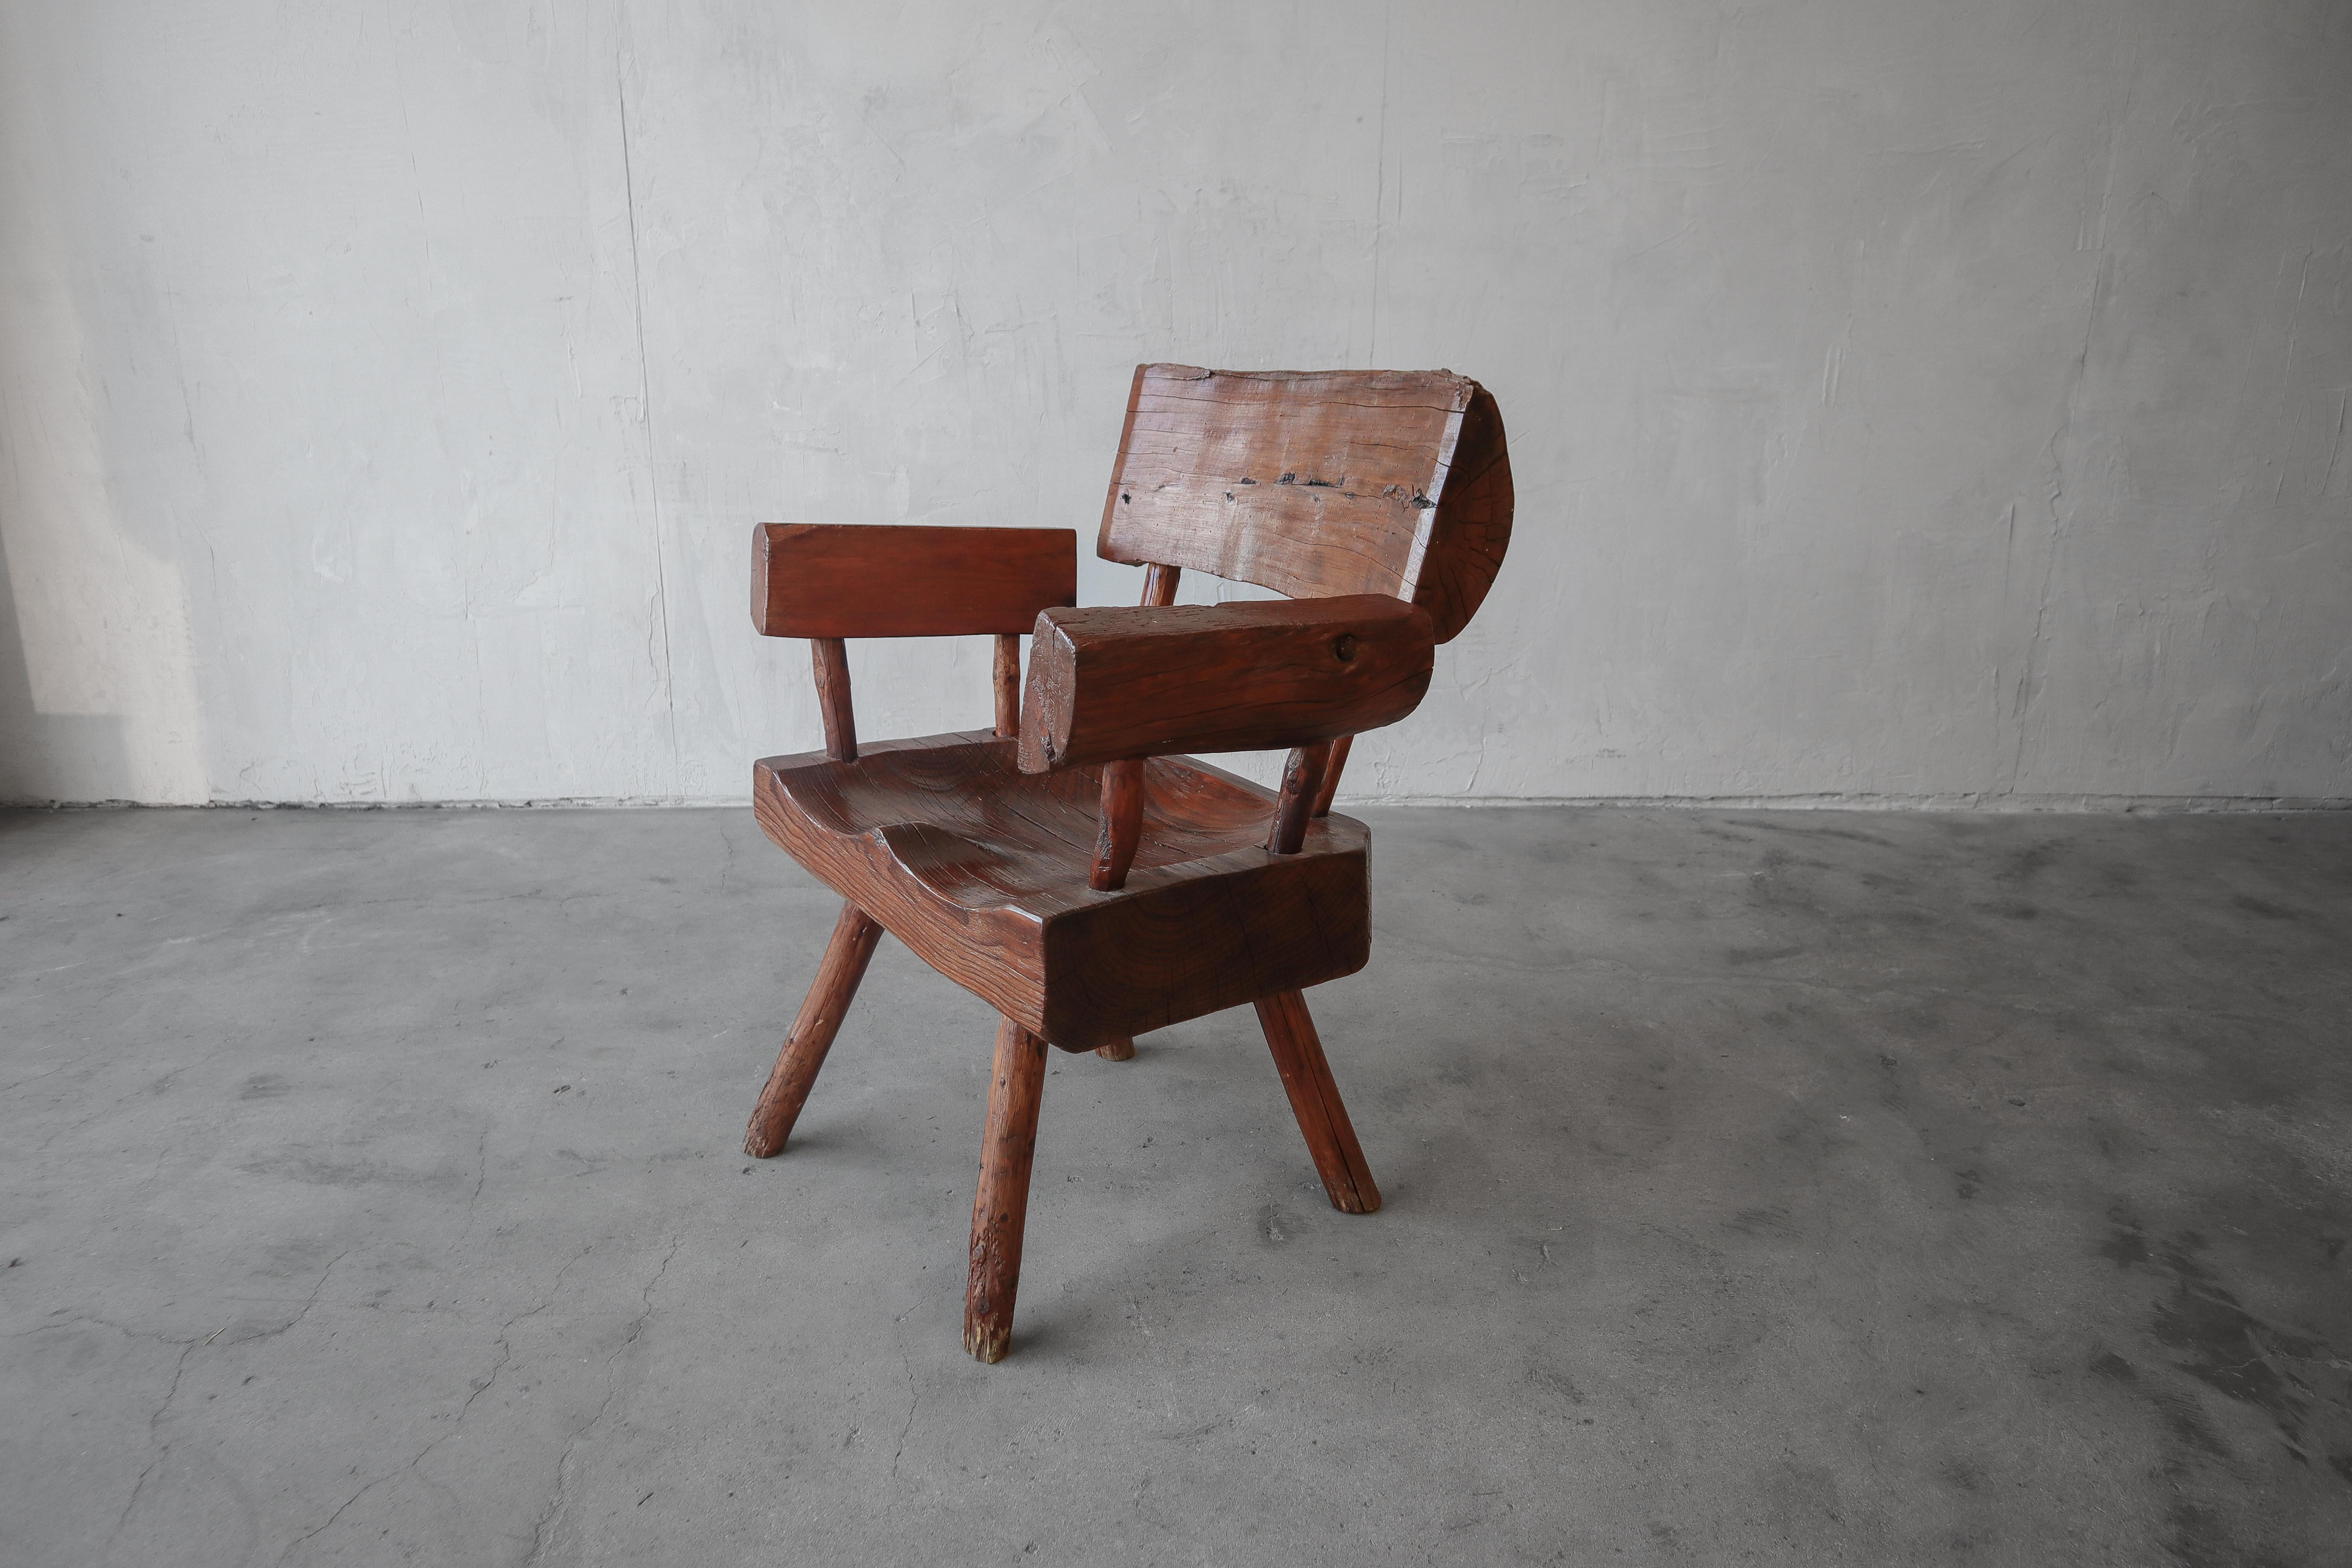 Superbe chaise primitive à bord vif. Pièce d'angle parfaite pour compléter tout décor wabisabi, minimaliste ou rustique.

La chaise présente des inclusions naturelles et une légère usure qui ajoutent à son caractère. Il est solide, mais il est